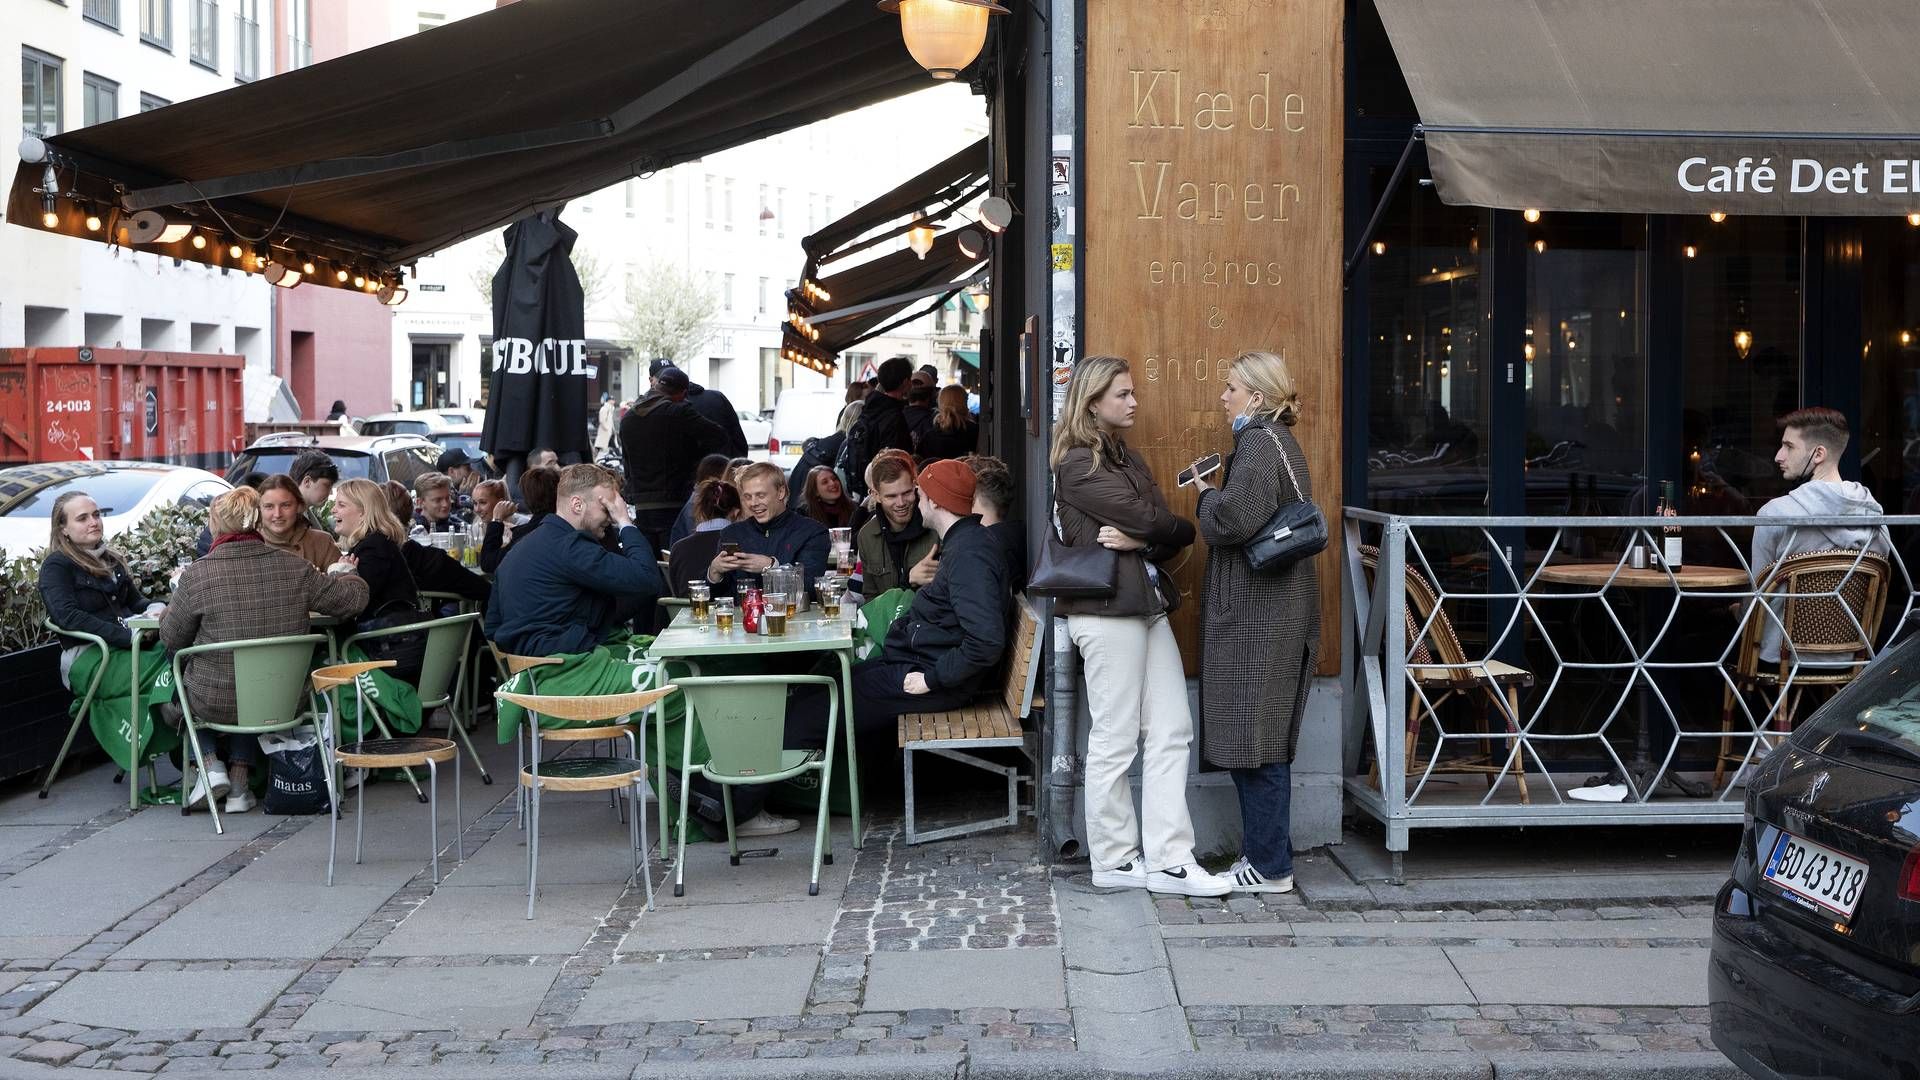 Cafeer, restauranter og barers gode ideer er mere end velkomne, når erhvervet frem til 21. juli kan søge om støtte til arrangementer. | Foto: Finn Frandsen